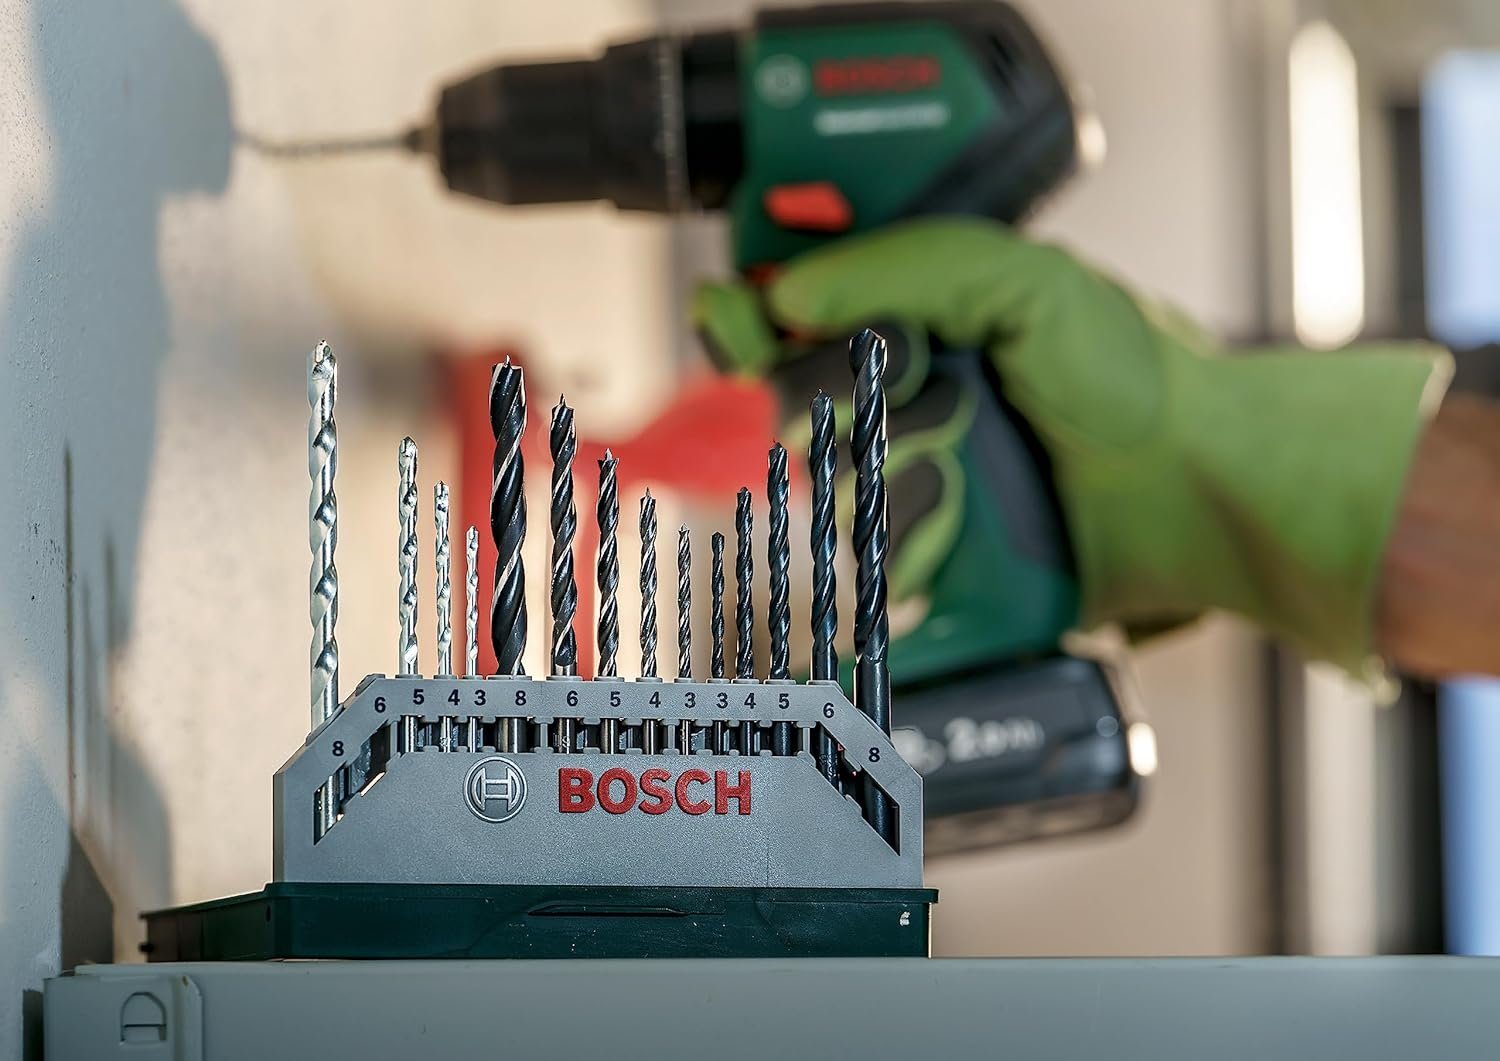 BOSCH Bohrer- Mixed-Set und Mini-X-Line und Spiralbohrer Stein Bitset Bosch Metal 15tlg. (Holz